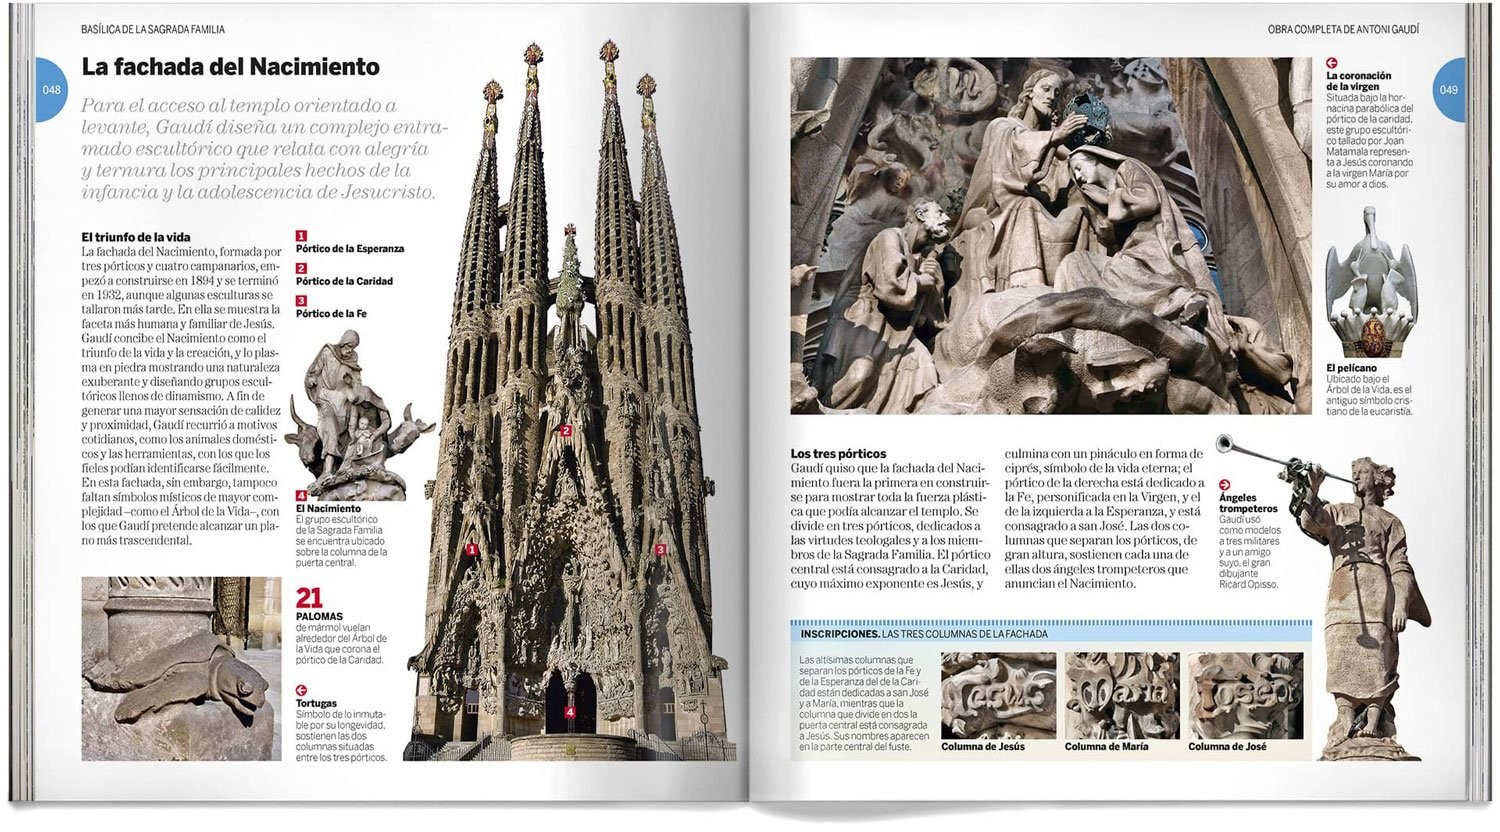 oposiciones sin estres! manual para futuros funci - Librería Papelería Gaudi